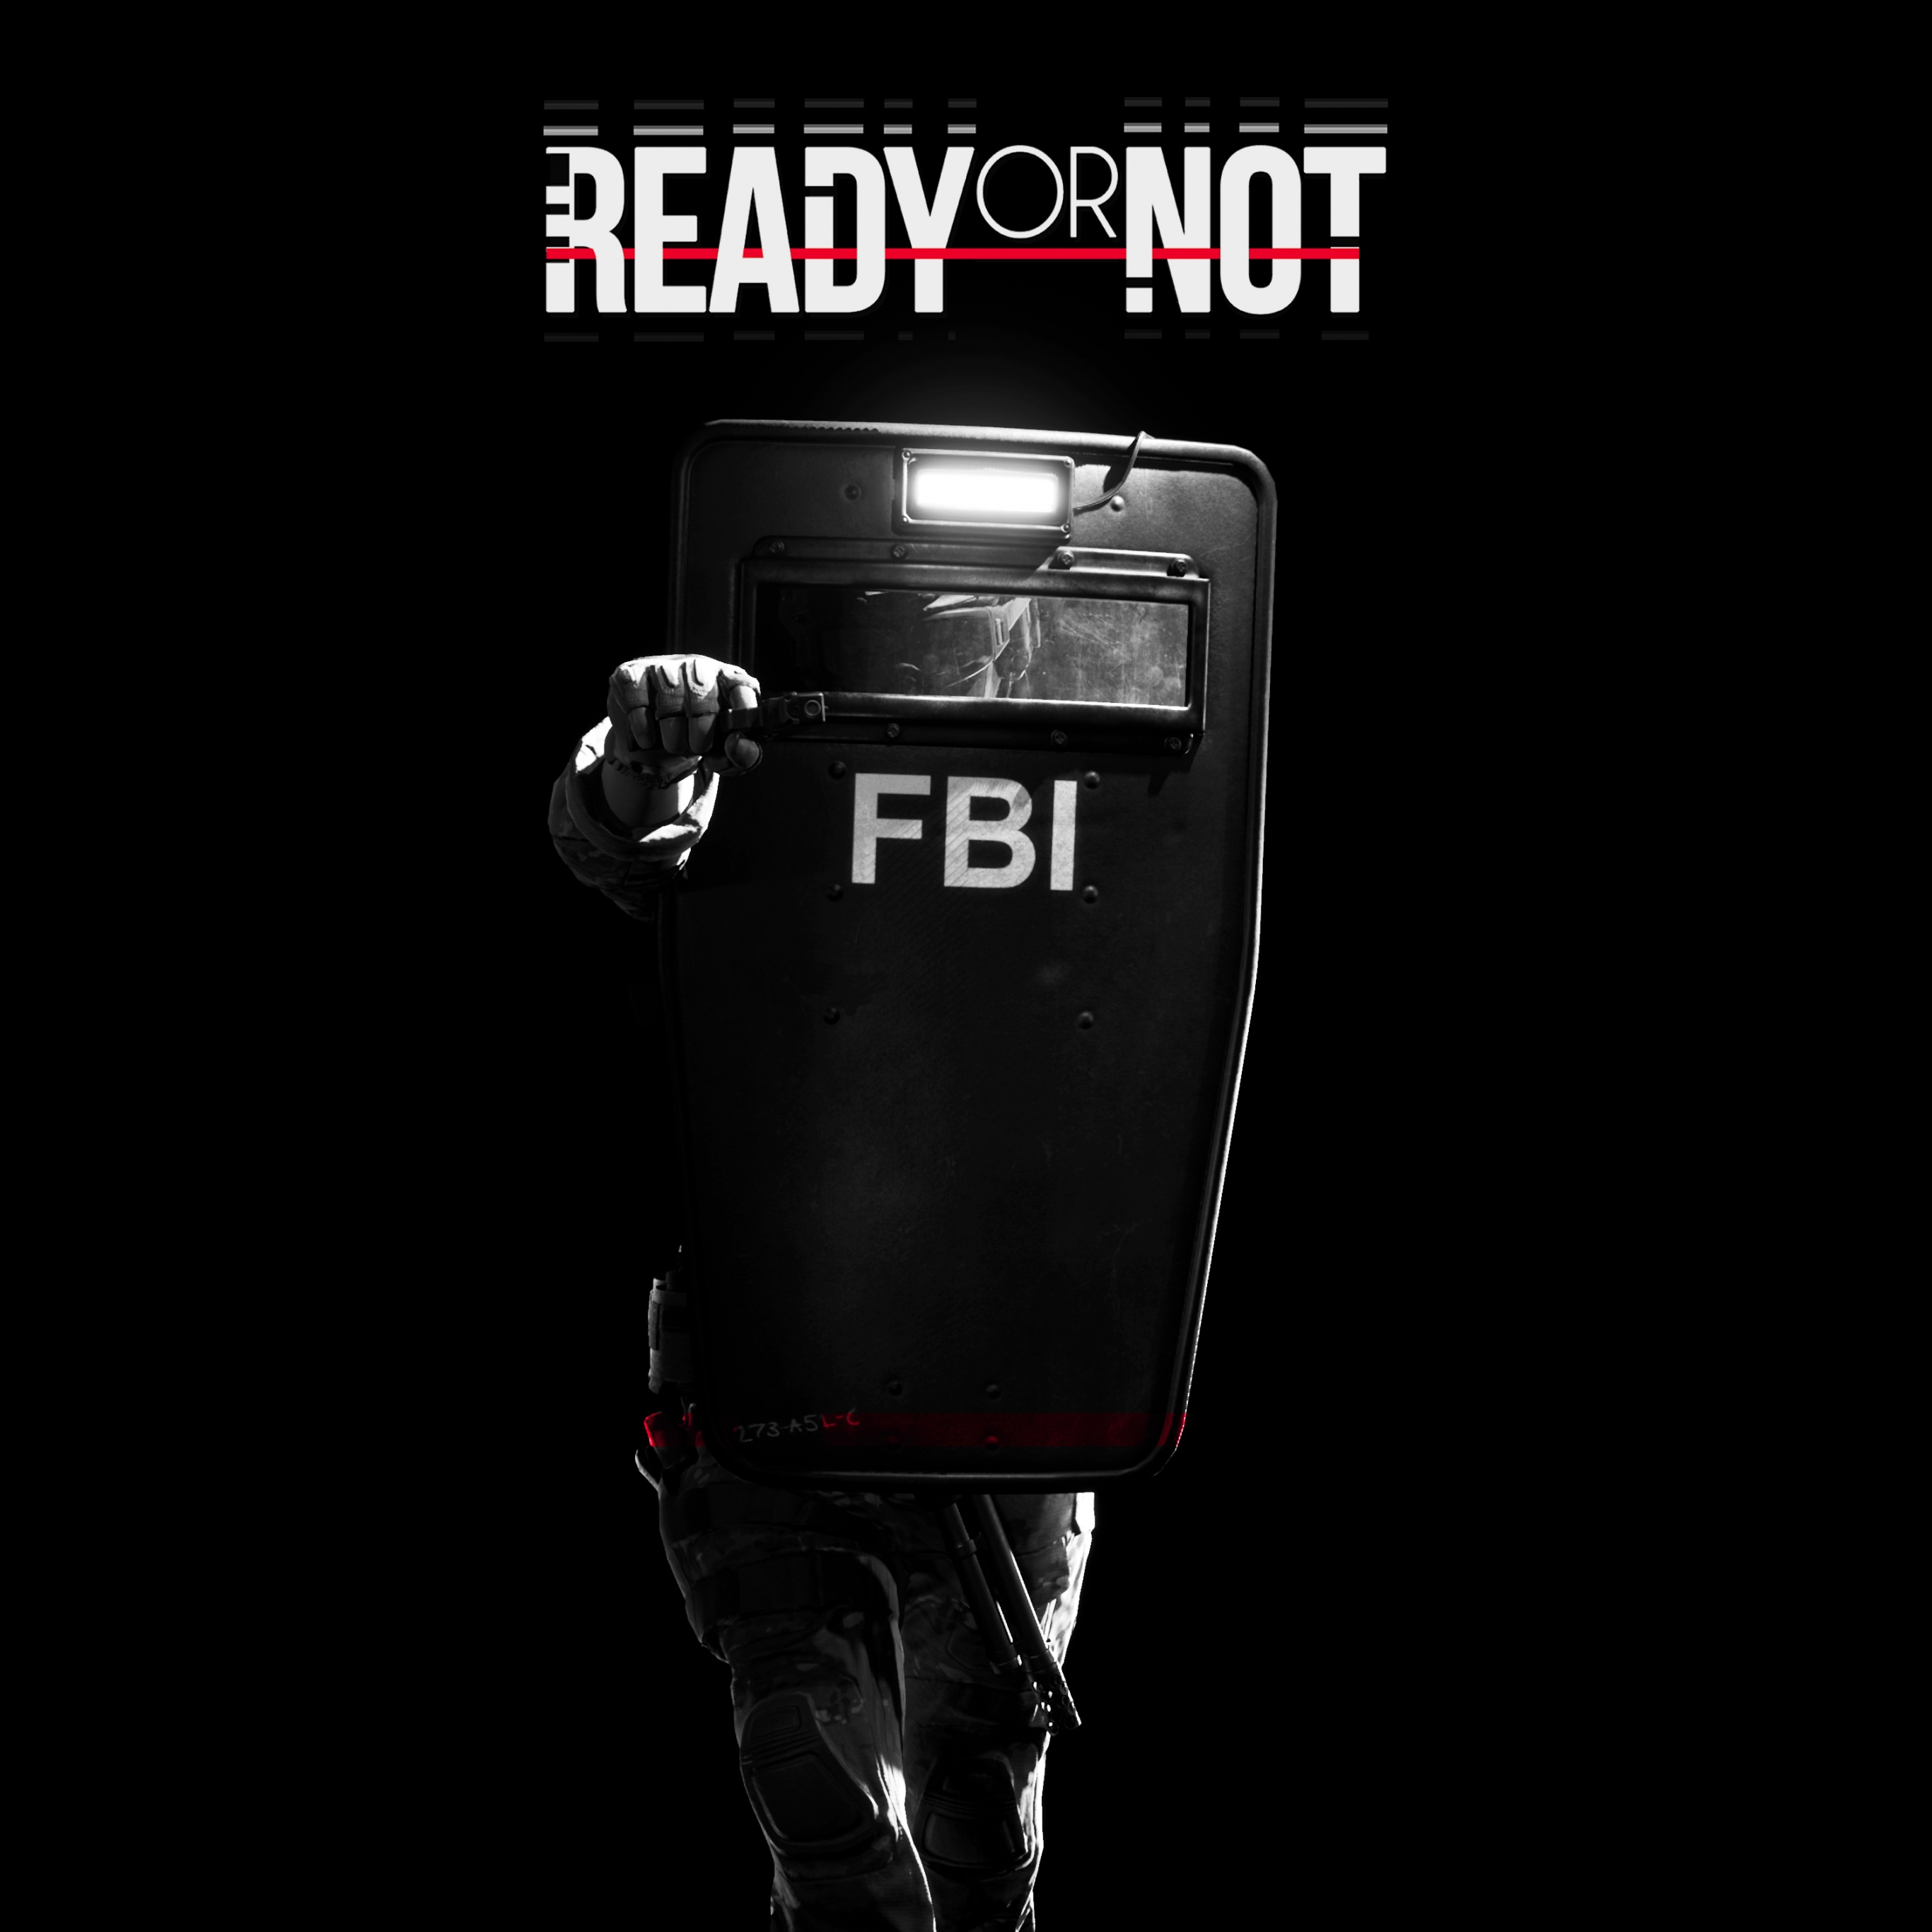 Ready Or Not Wallpaper 4K, FBI, Police, Shield, Black Background, 5K, Black Dark